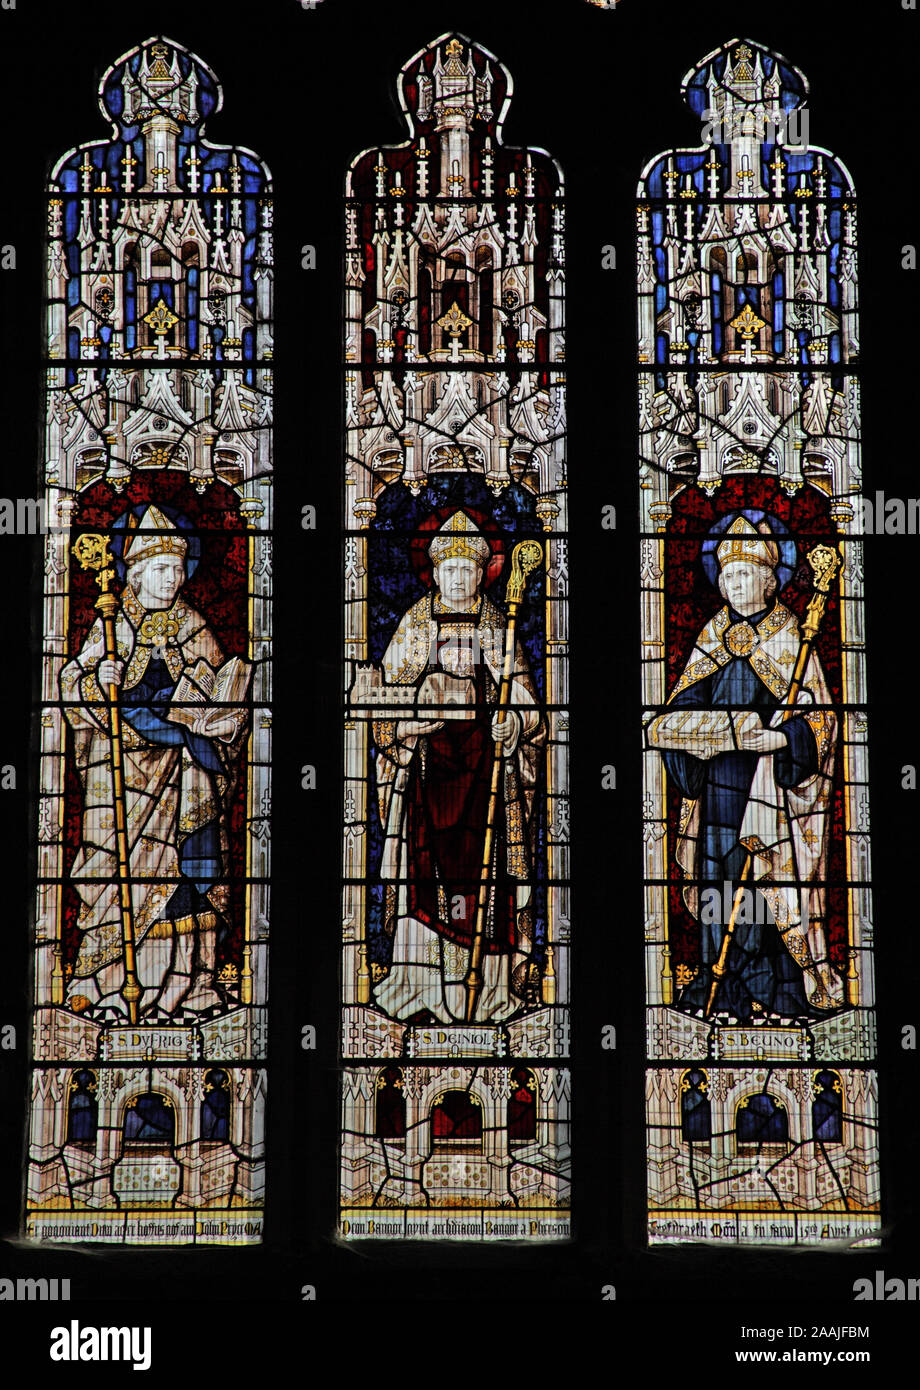 A stained glass window by Burliuson & Grylls depicting saints Dyfrig, Deiniol and Beuno, Bangor Cathedral, Bangor, Gwynedd, Wales Stock Photo